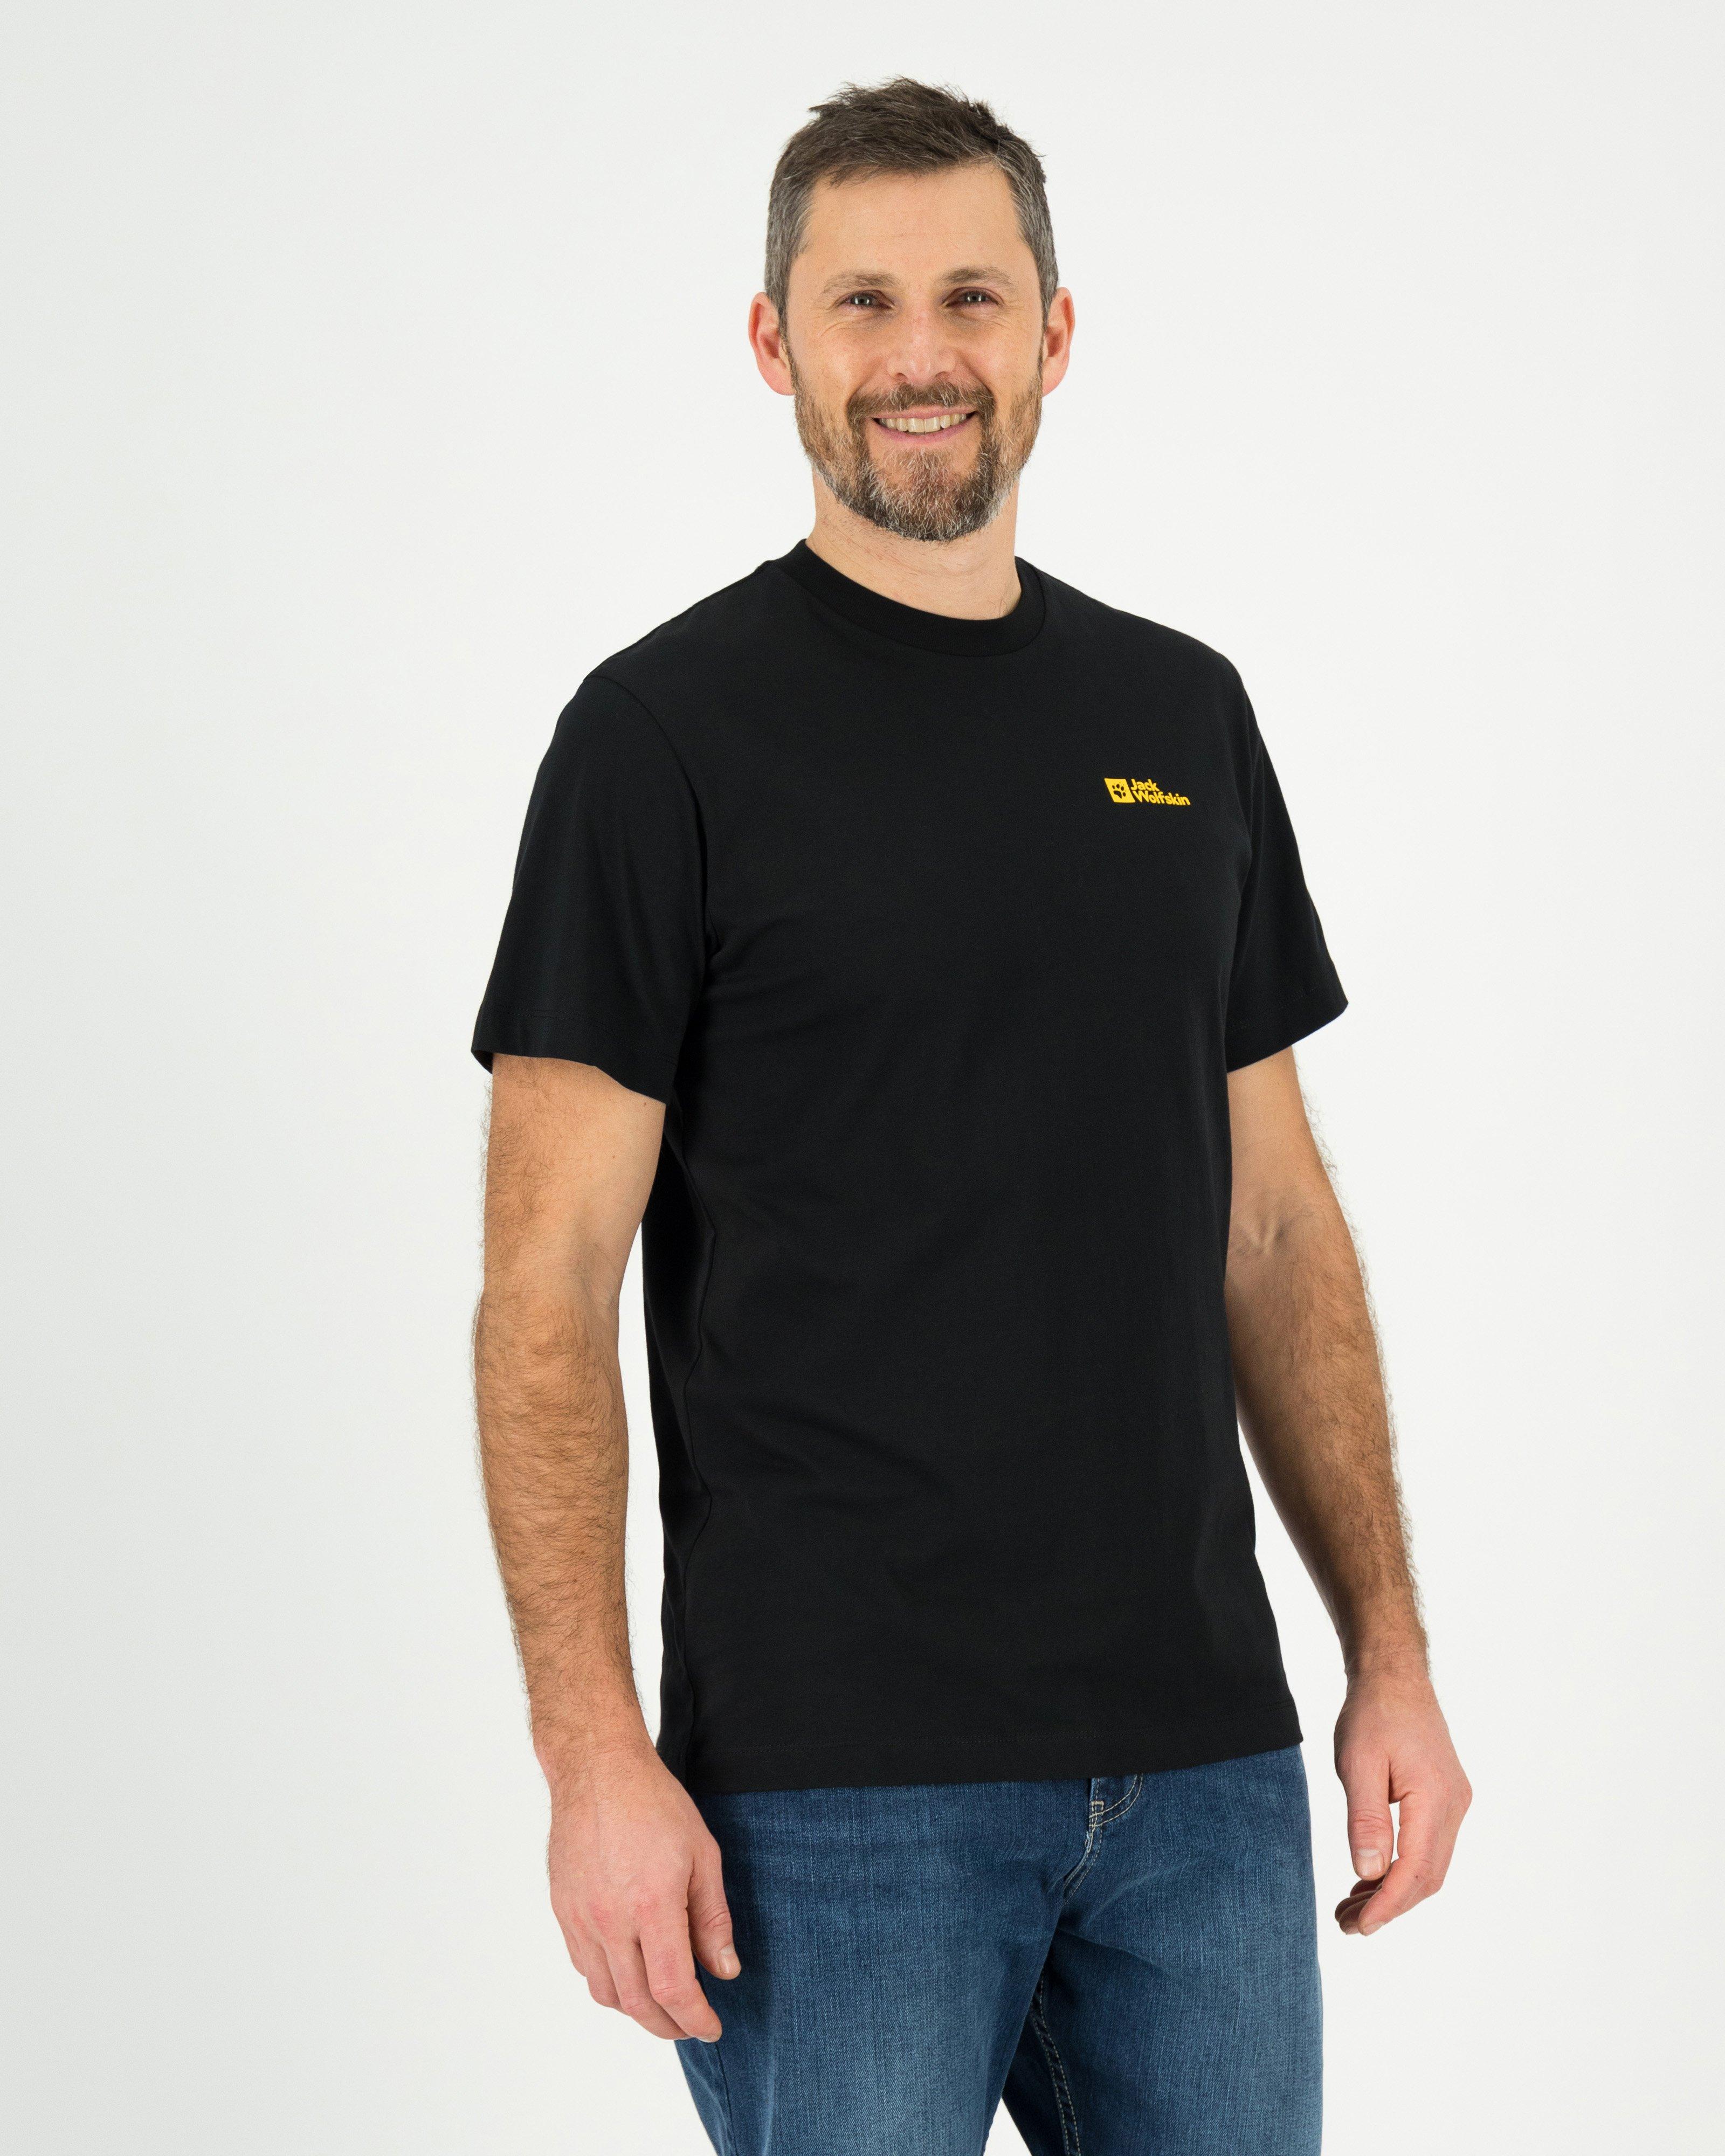 Jack Wolfskin Men’s Essential Cotton T-shirt  -  Black